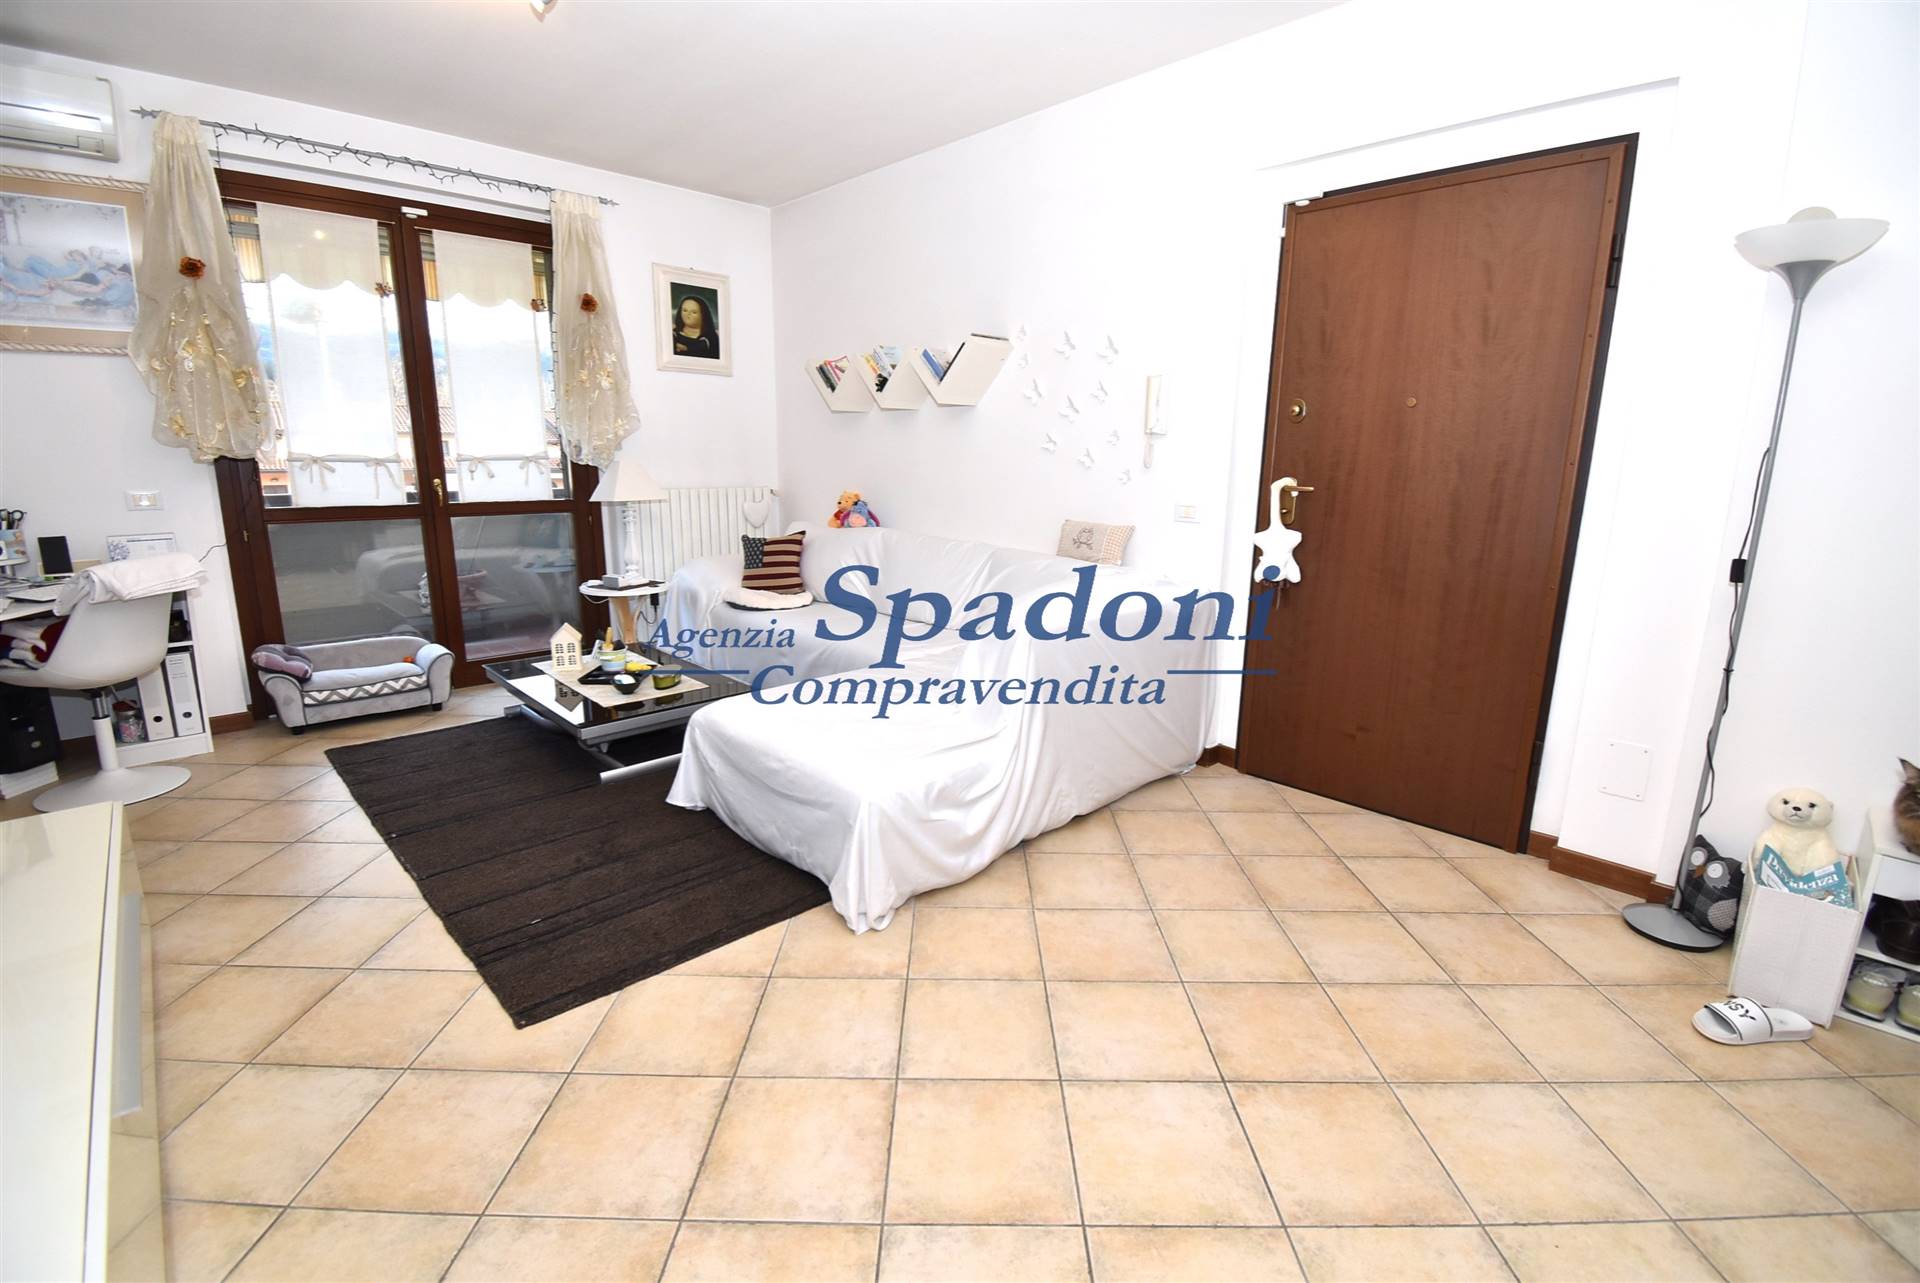 Appartamento in vendita a Serravalle Pistoiese, 4 locali, prezzo € 164.000 | PortaleAgenzieImmobiliari.it